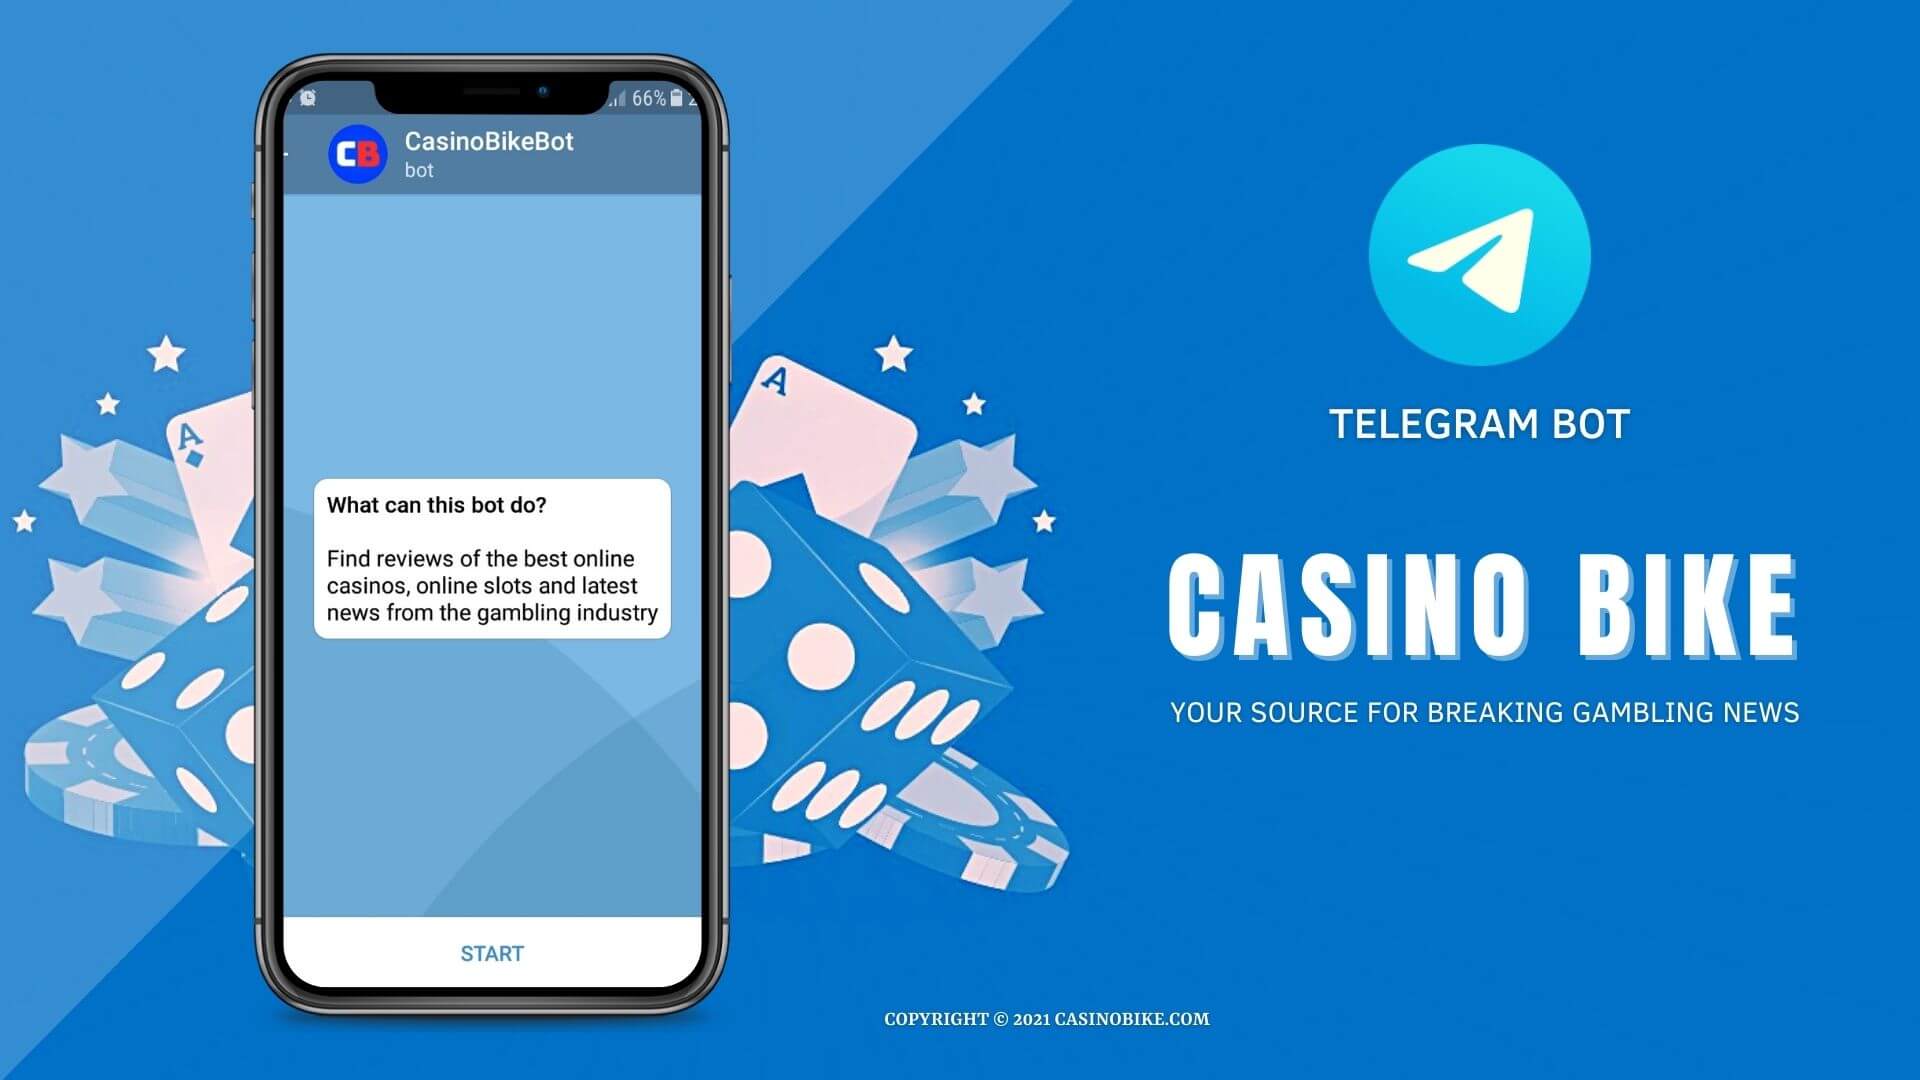 Casino Bike Telegram Bot